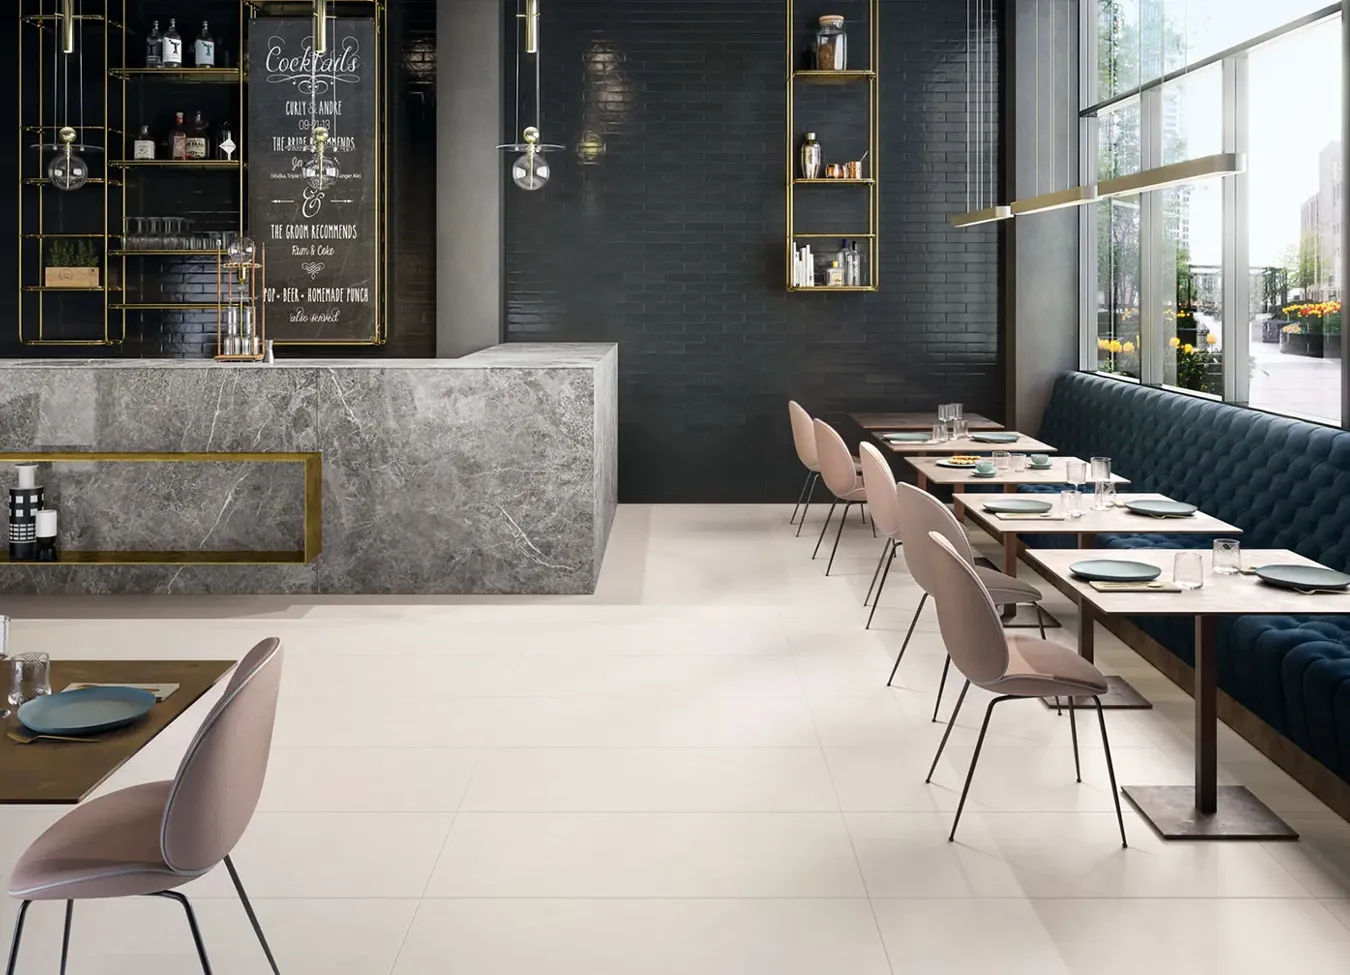 Pavimento effetto resina bianco in un ristorante moderno con arredamento elegante.